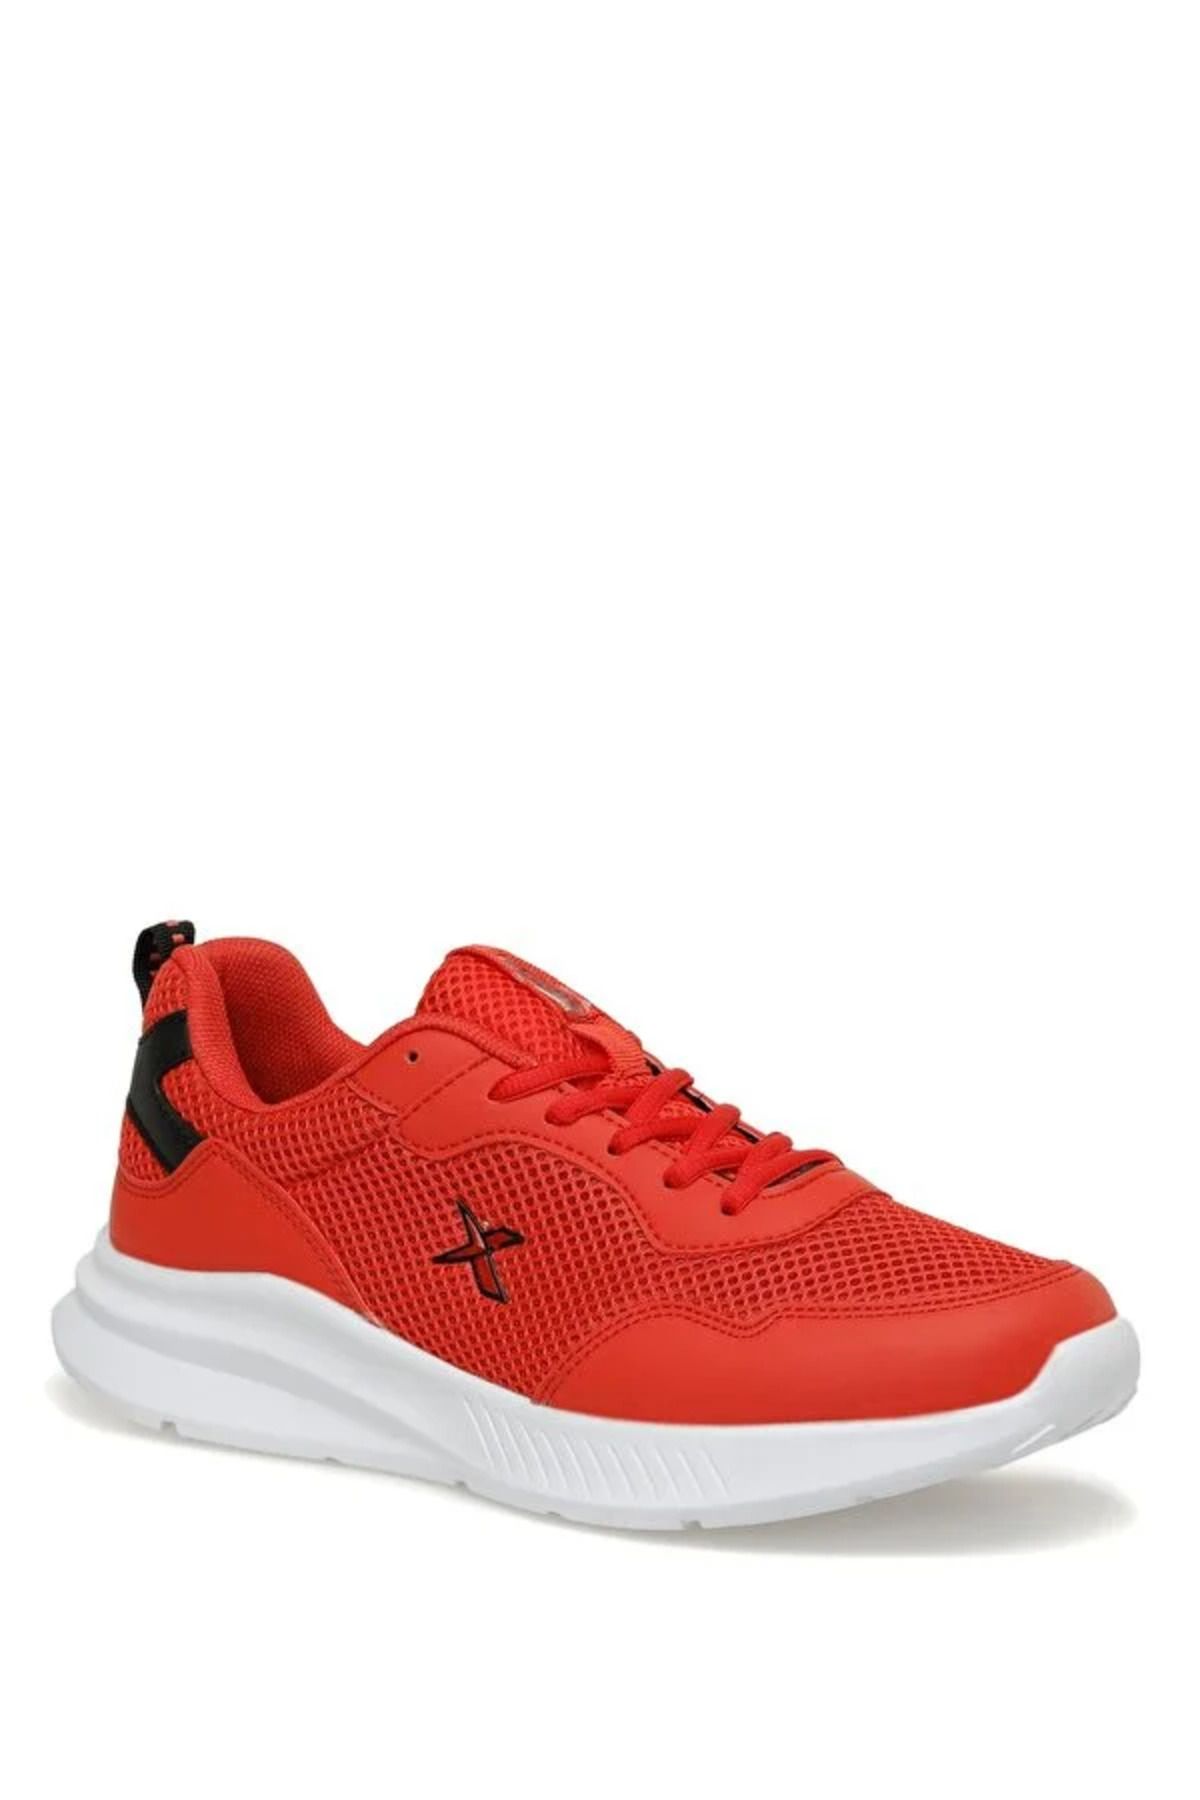 Kinetix Mınor Tx 3fx Bağcıklı Phlon Taban Erkek Spor Ayakkabı Kırmızı